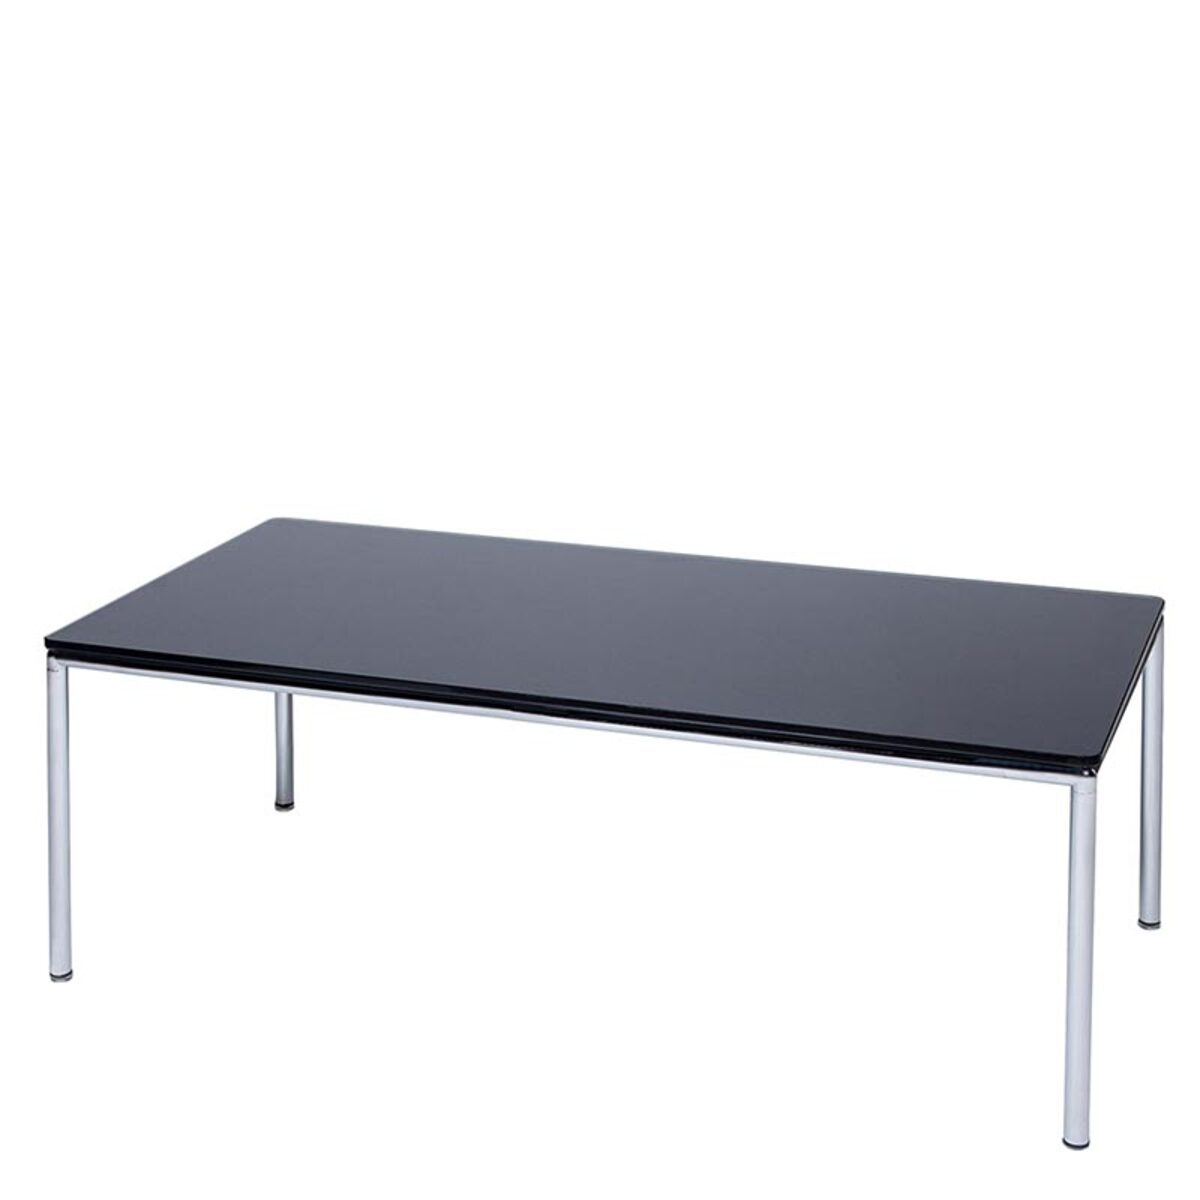 Table basse rectangulaire 60x120 cm antona